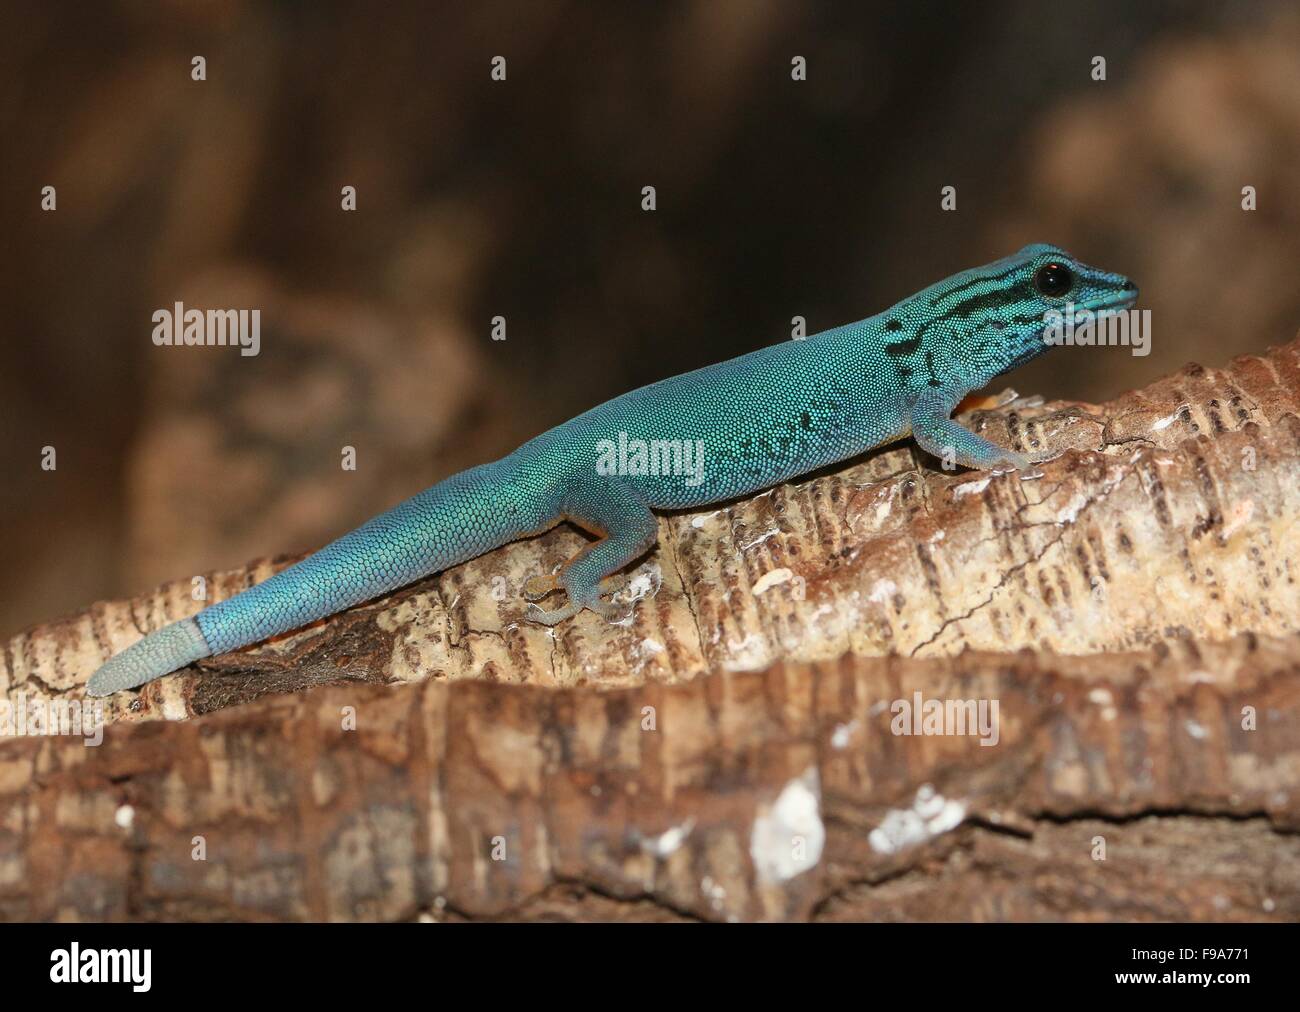 Tanzanian Turquoise Dwarf Gecko or William's dwarf gecko (Lygodactylus williamsi) Stock Photo